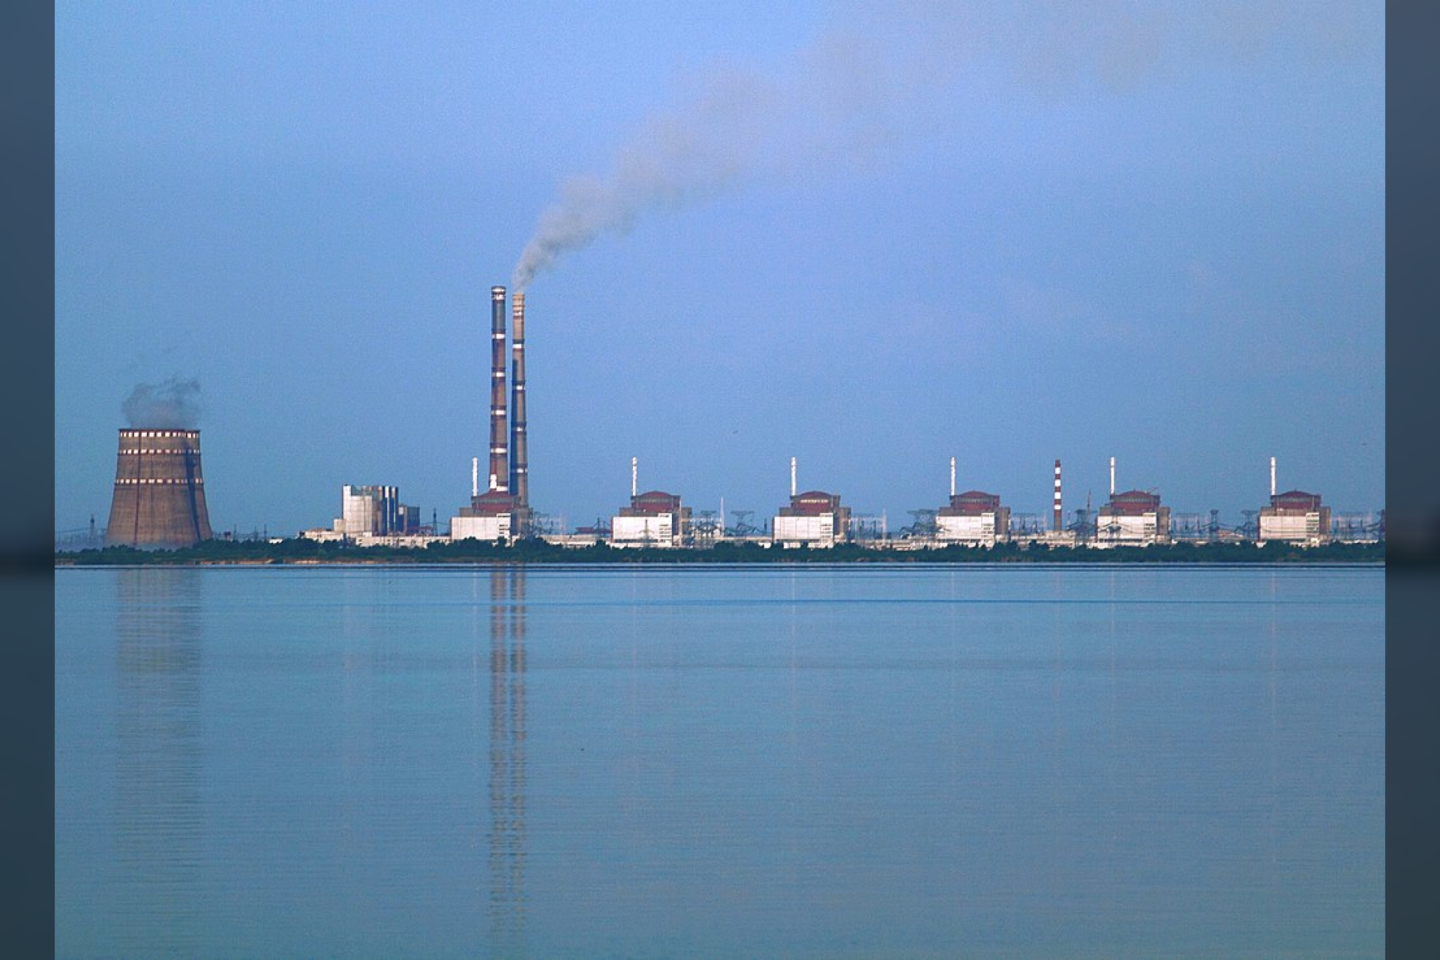  Ši sovietmečiu pastatyta elektrinė – didžiausias branduolinis reaktorius Europoje.<br> Wikimedia Commons.